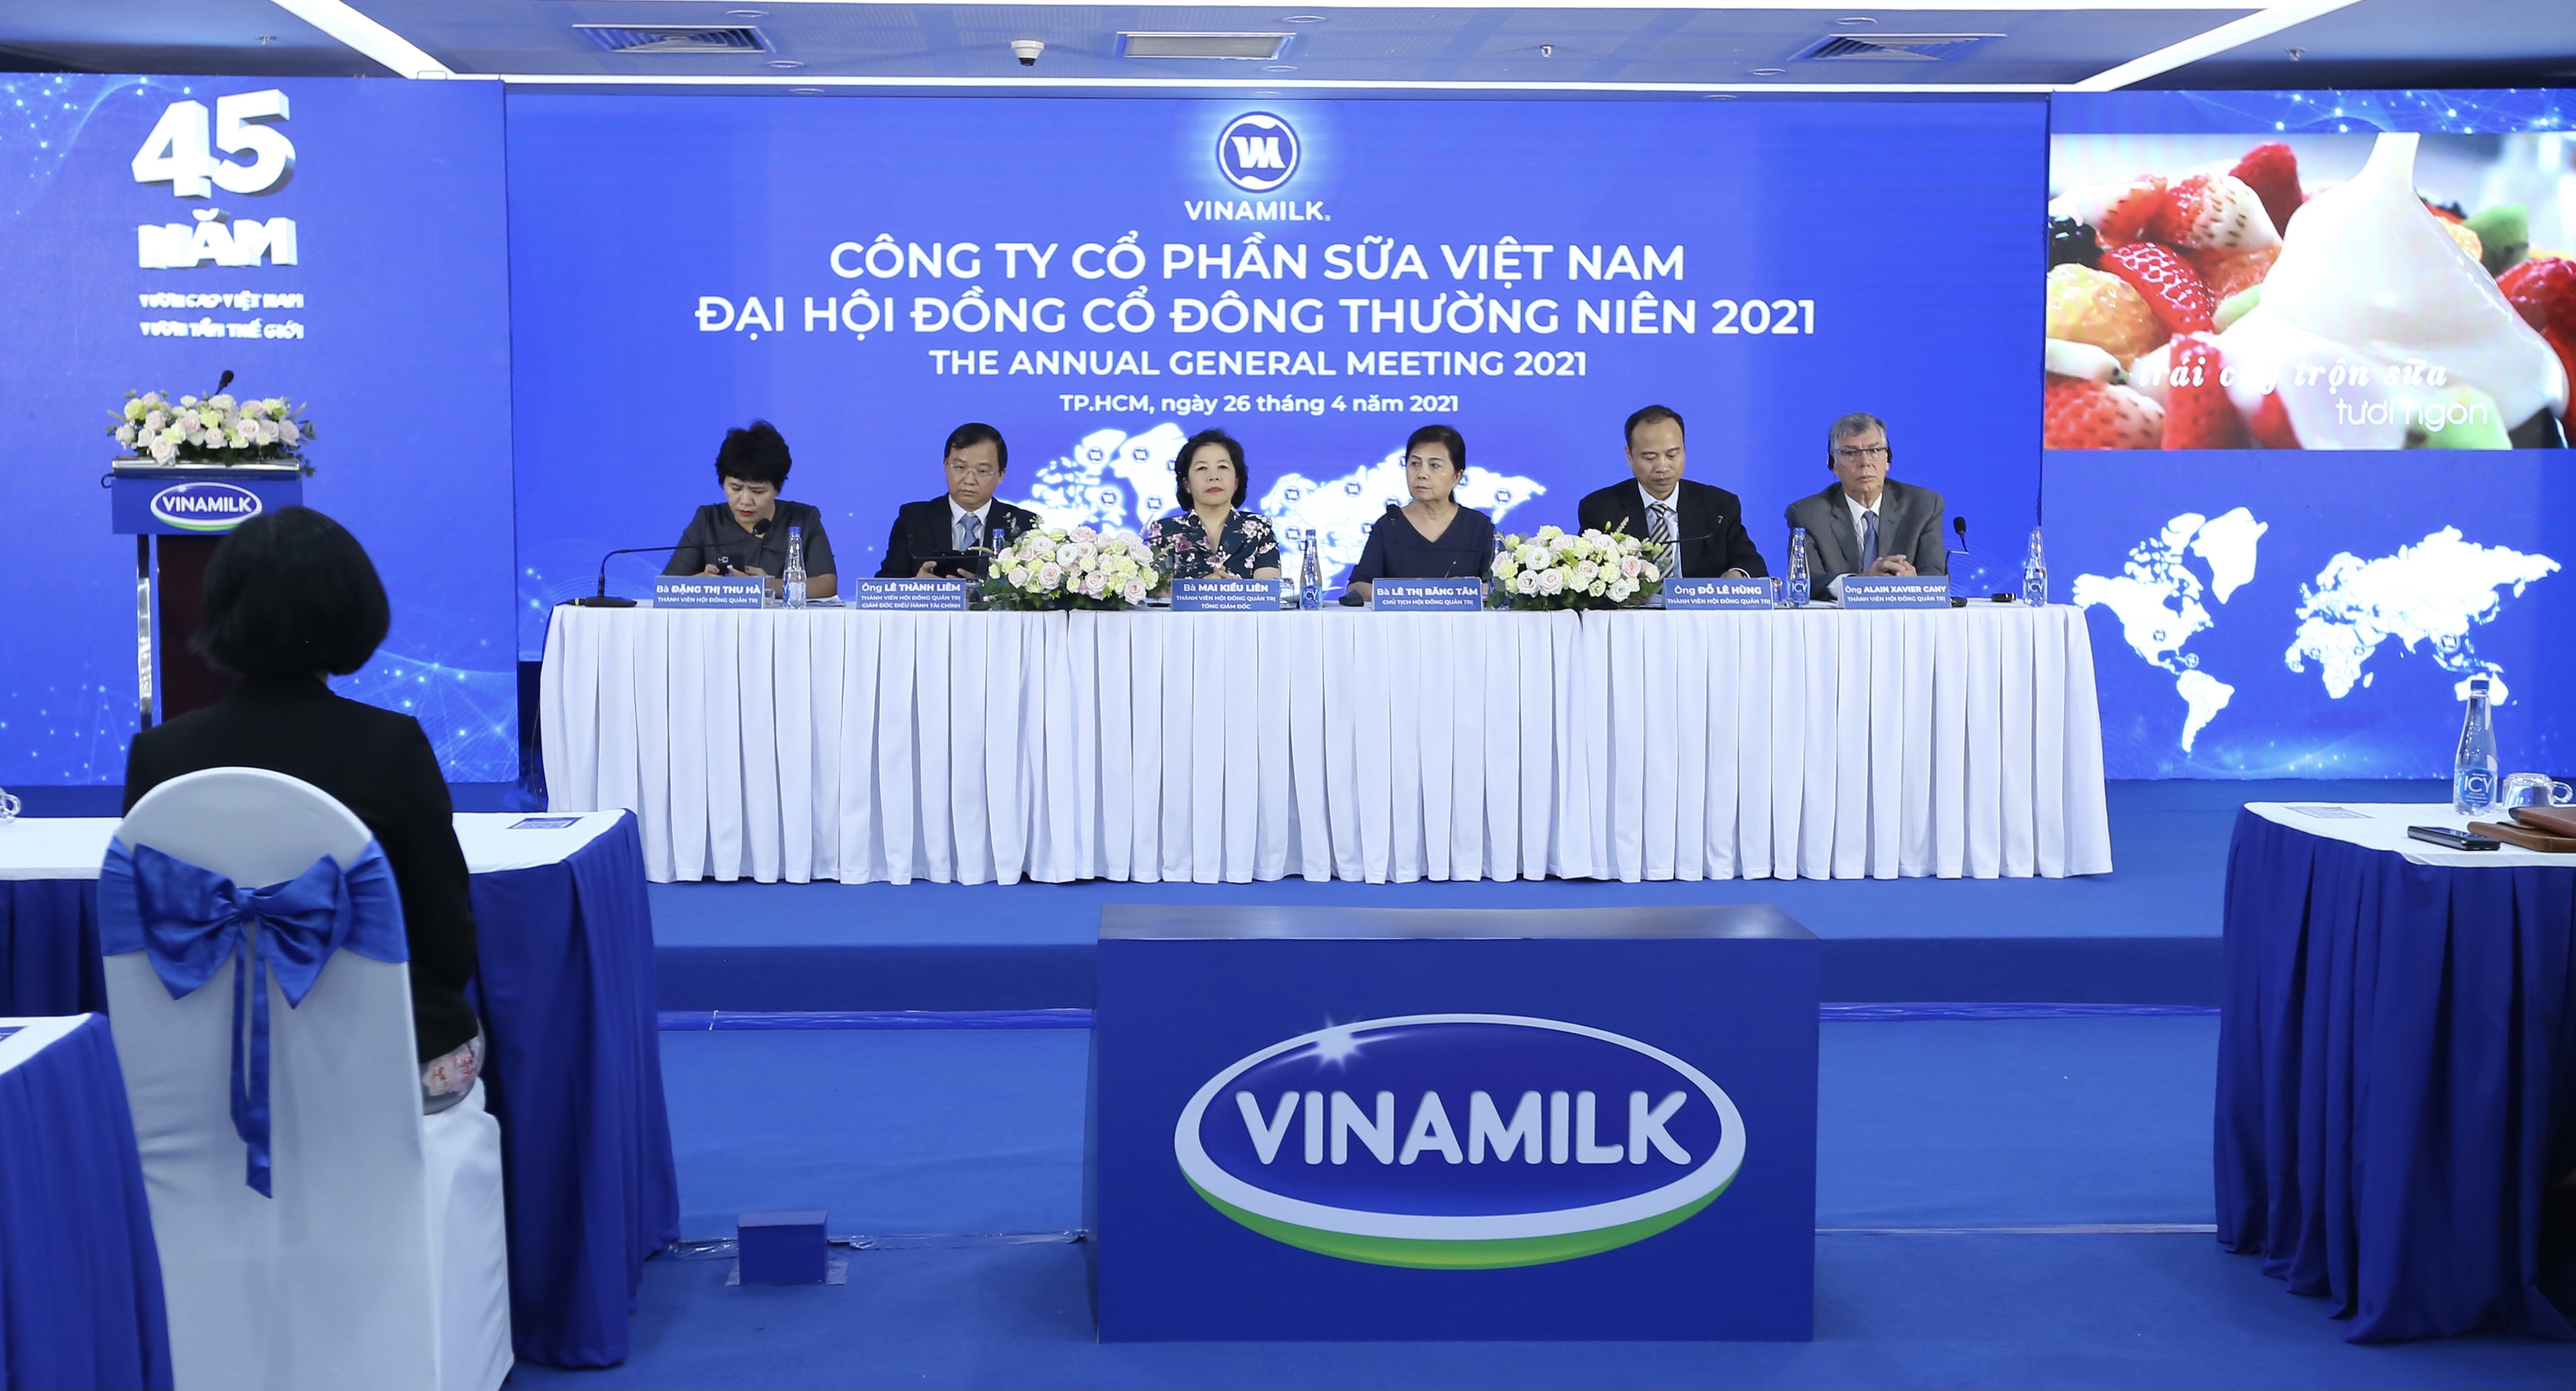 Tổng Giám đốc Vinamilk: Luôn tìm cơ hội tốt để xem xét đầu tư cả trong và ngoài nước